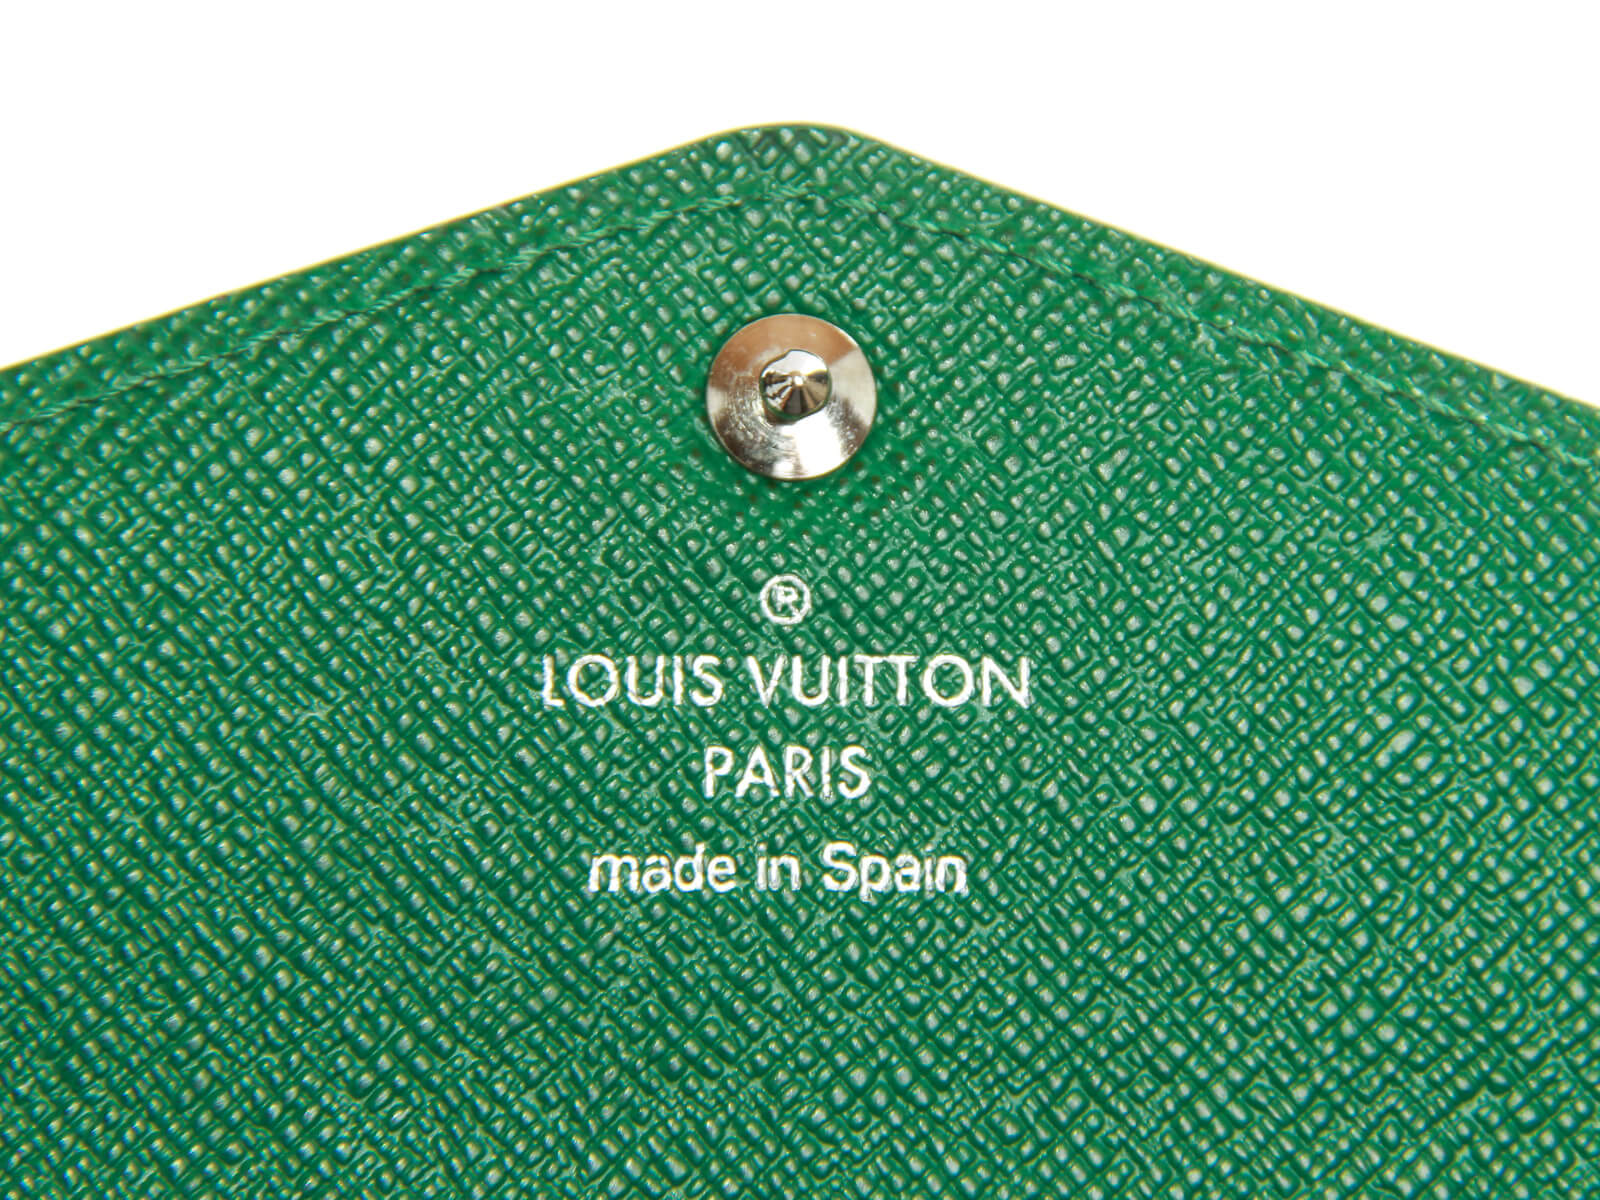 Louis Vuitton Sarah  Natural Resource Department